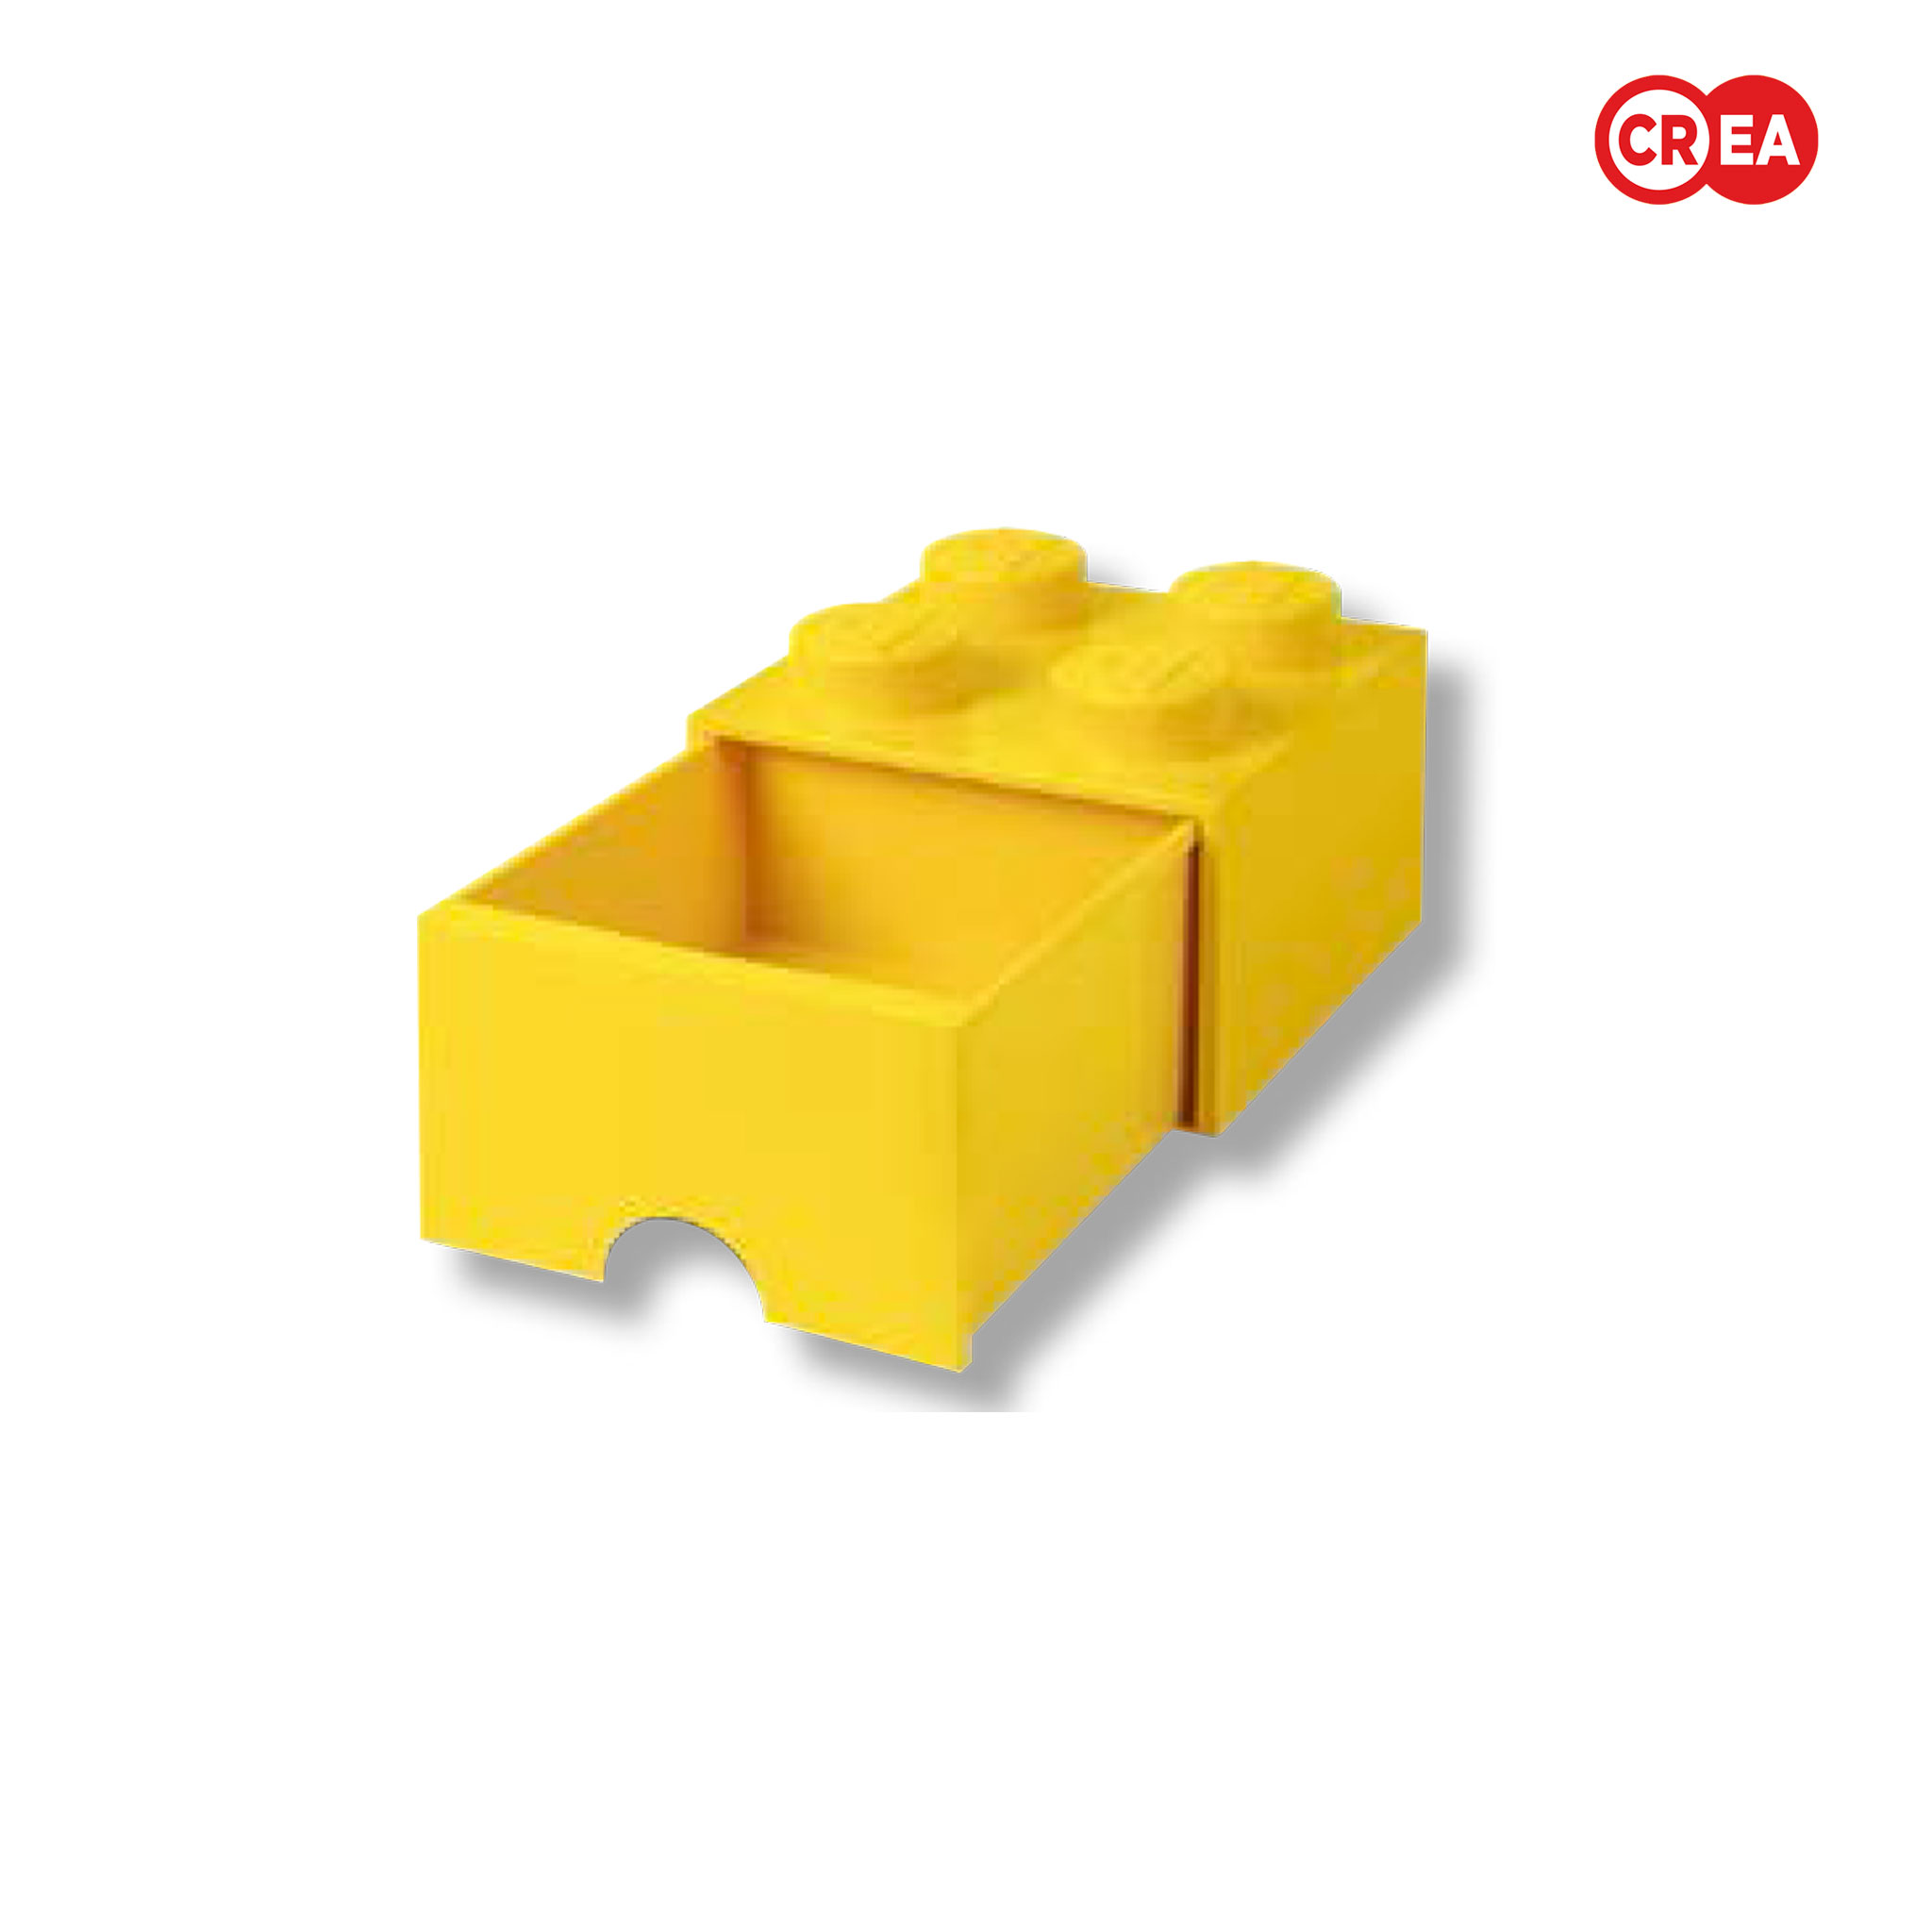 LEGO - Cassettiera Grande 4 - GIALLO